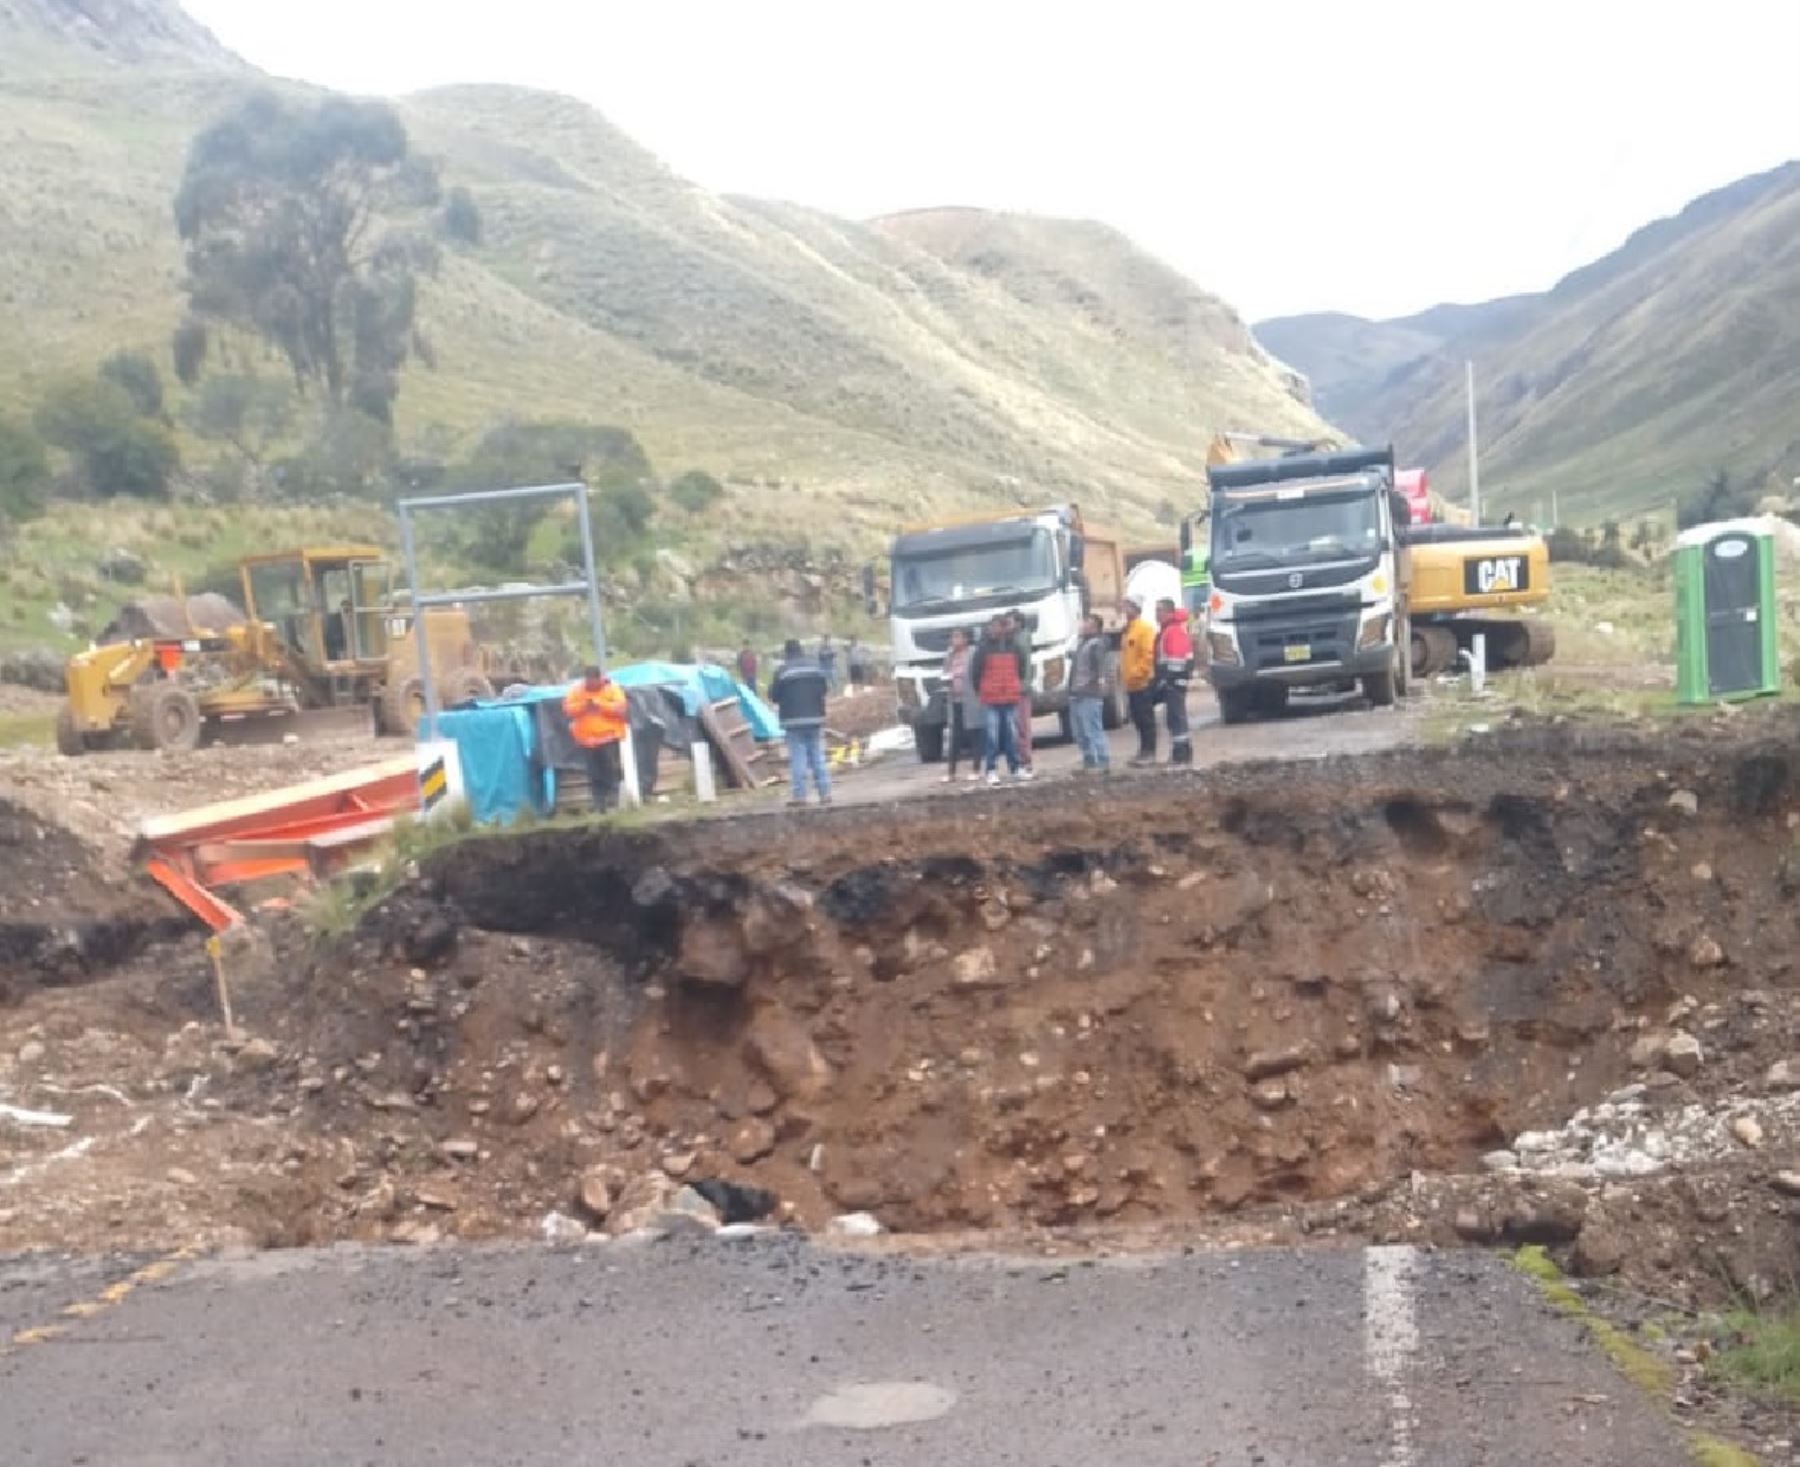 El distrito de Paras, ubicado en la provincia de Cangallo, región Ayacucho, se encuentra aislado debido al colapso de un puente, tras la crecida del río Niñobamba por lluvias intensas. ANDINA/Difusión